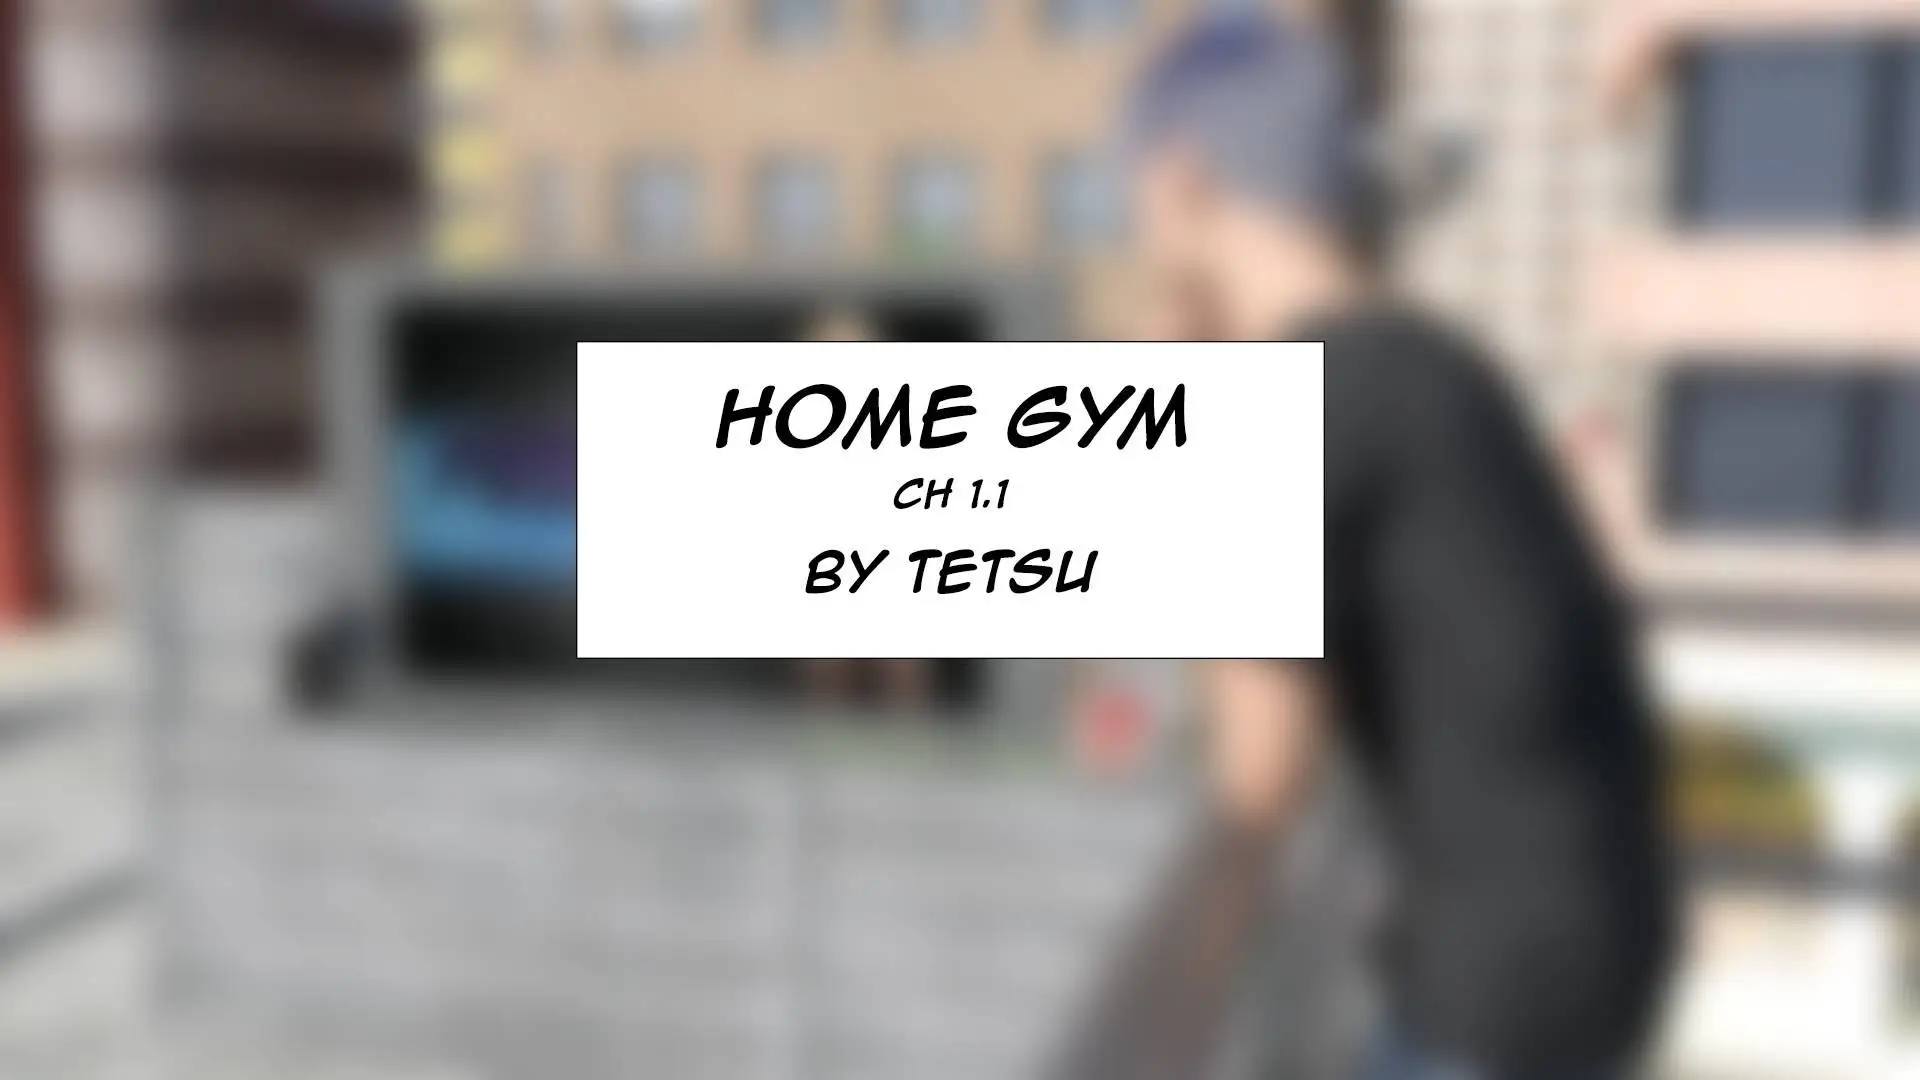 Tetsu home gym